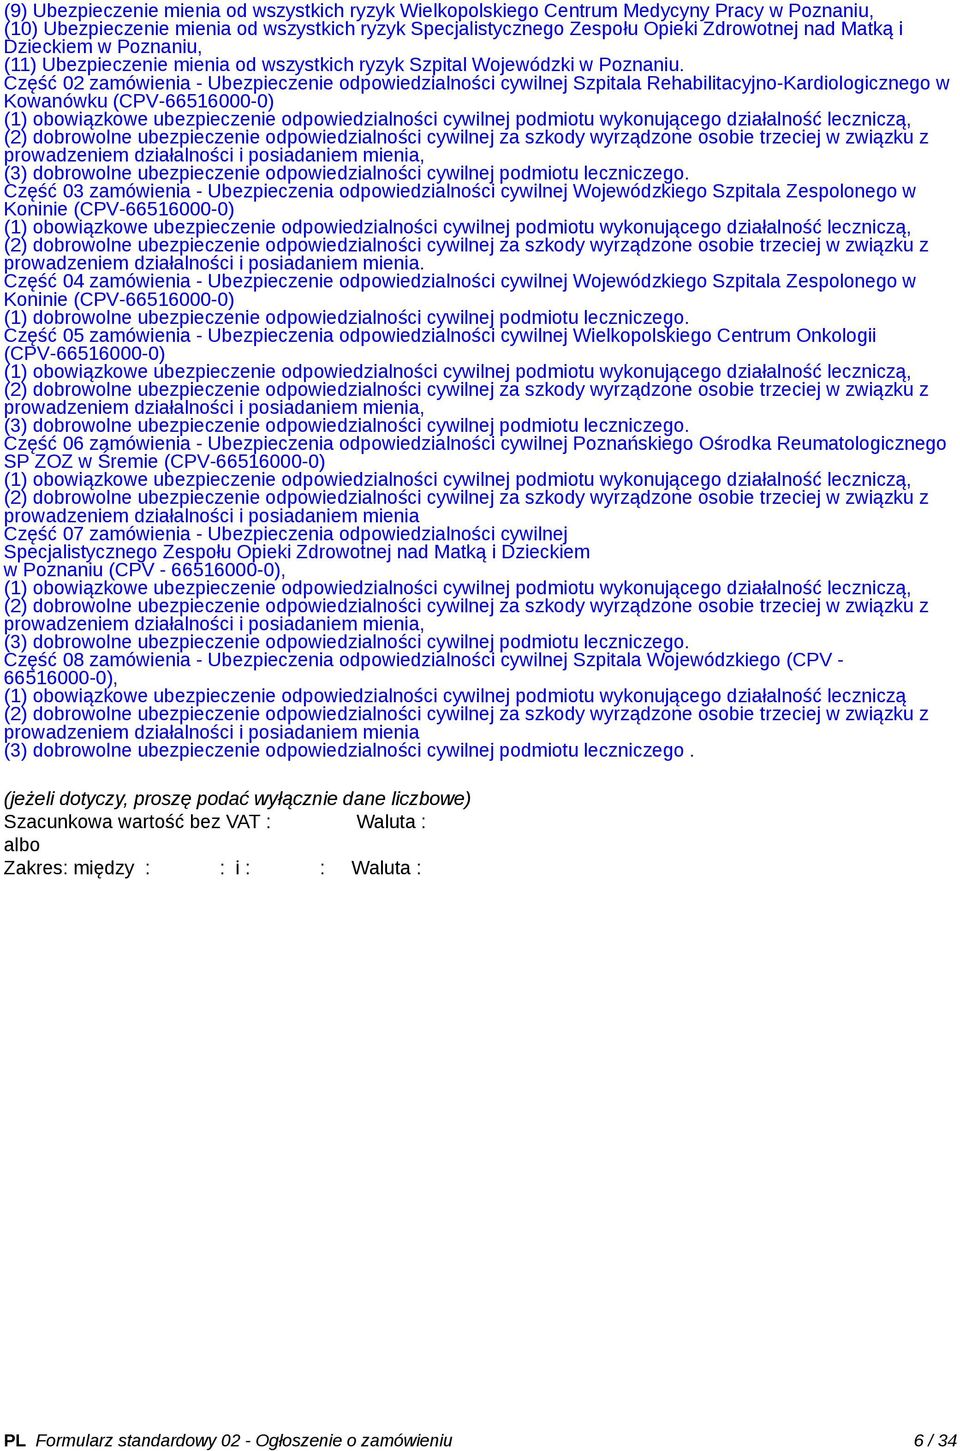 Część 02 zamówienia - Ubezpieczenie odpowiedzialności cywilnej Szpitala Rehabilitacyjno-Kardiologicznego w Kowanówku (CPV-66516000-0) prowadzeniem działalności i posiadaniem mienia, (3) dobrowolne